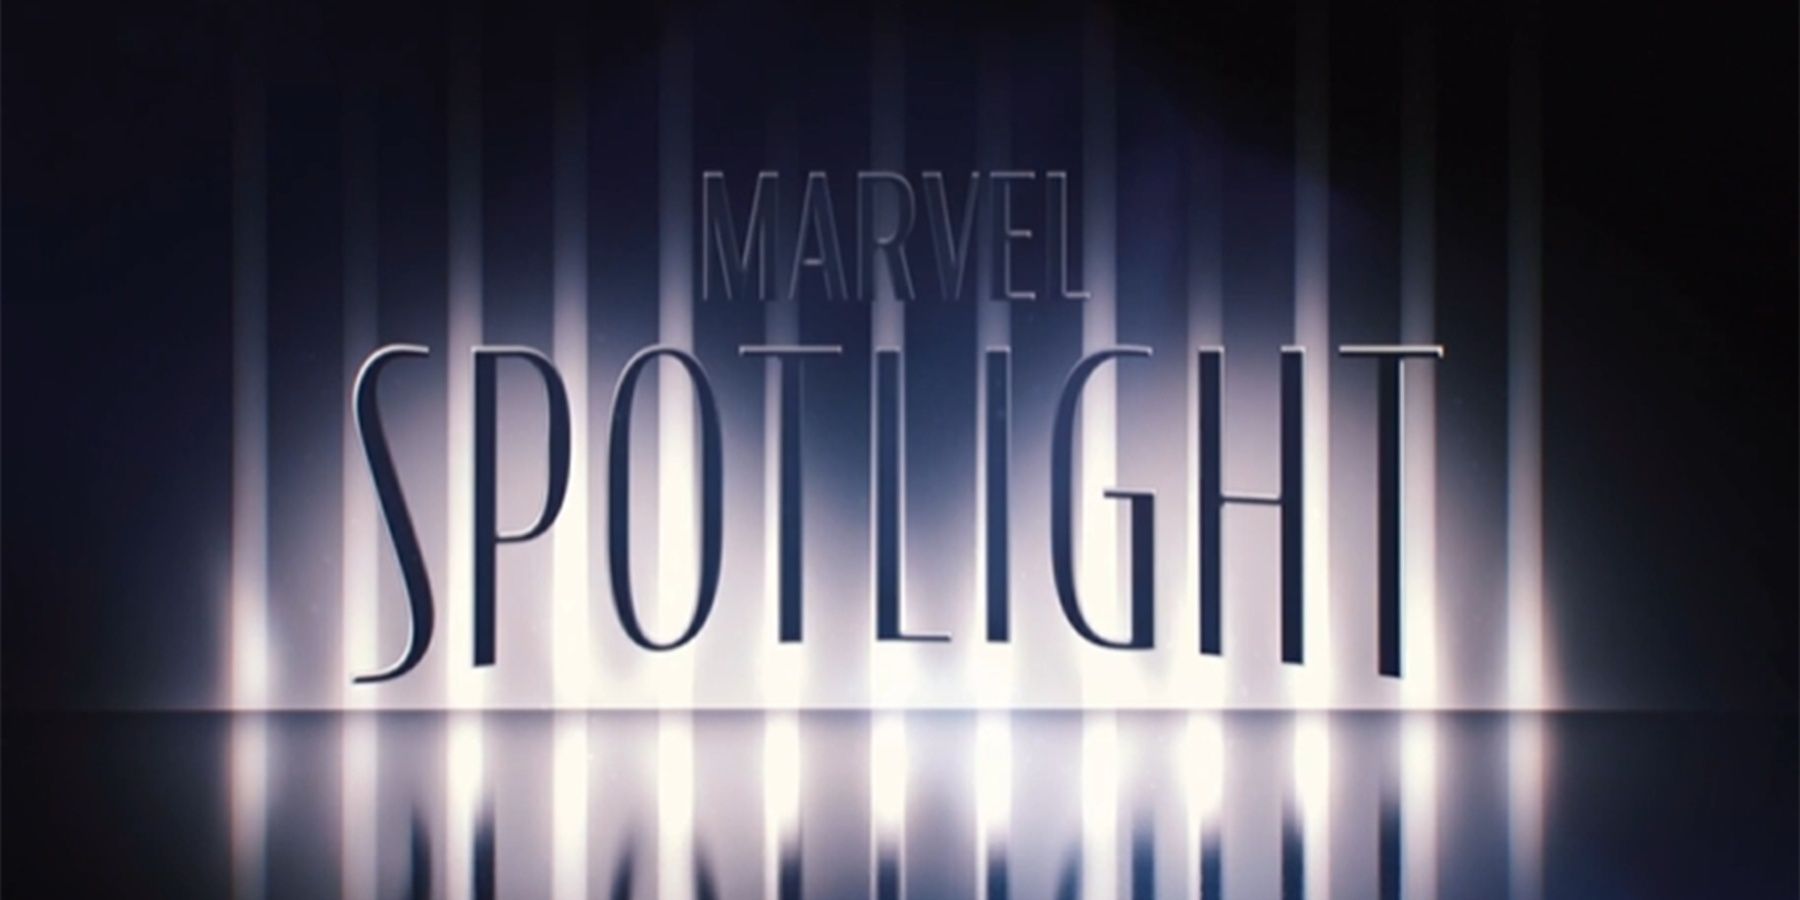 Marvel-Spotlight_logo 